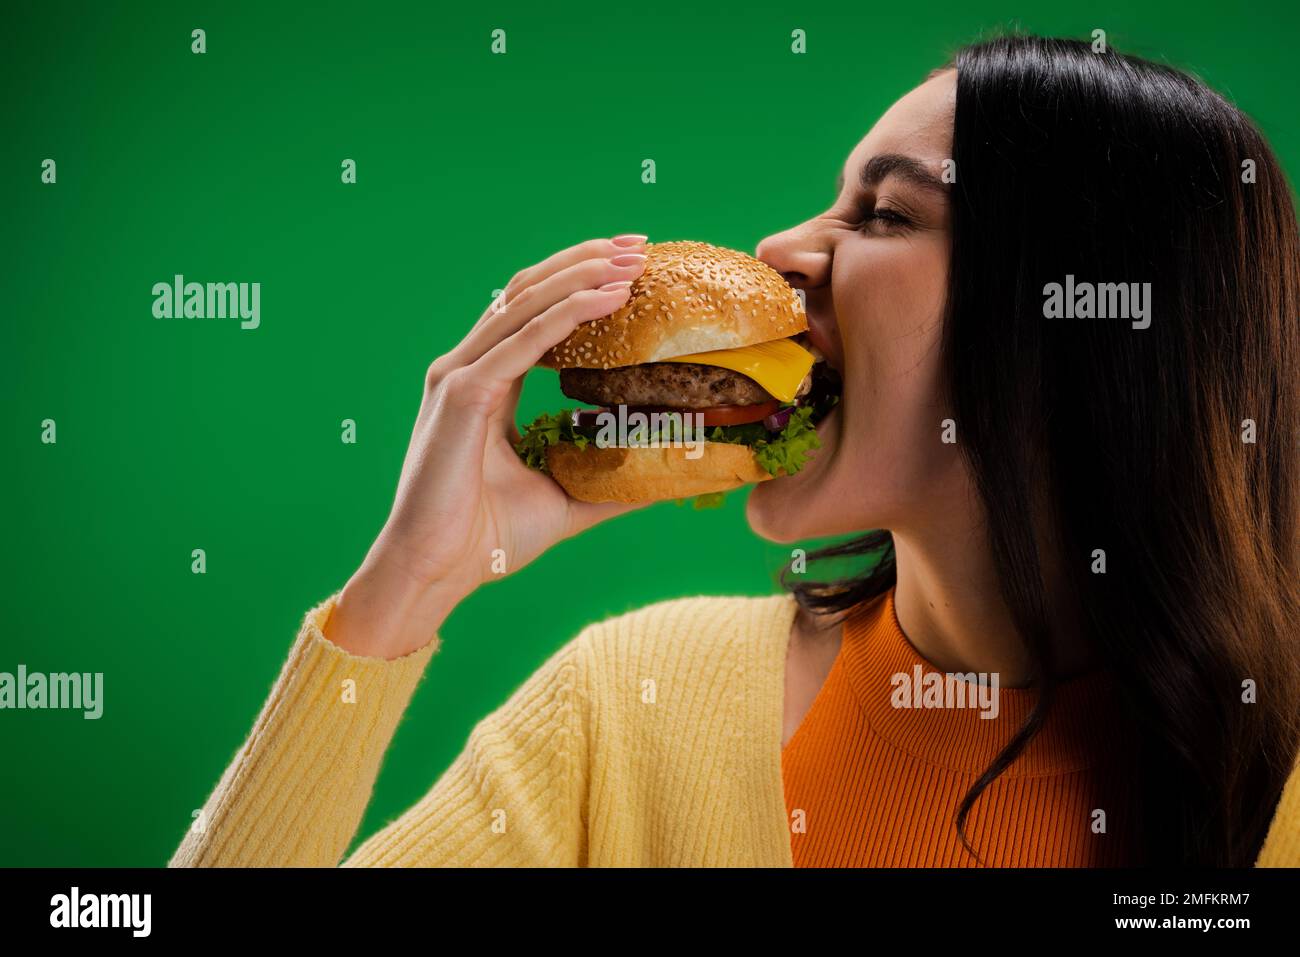 donna affamata mangiare delizioso hamburger isolato sul verde, immagine stock Foto Stock